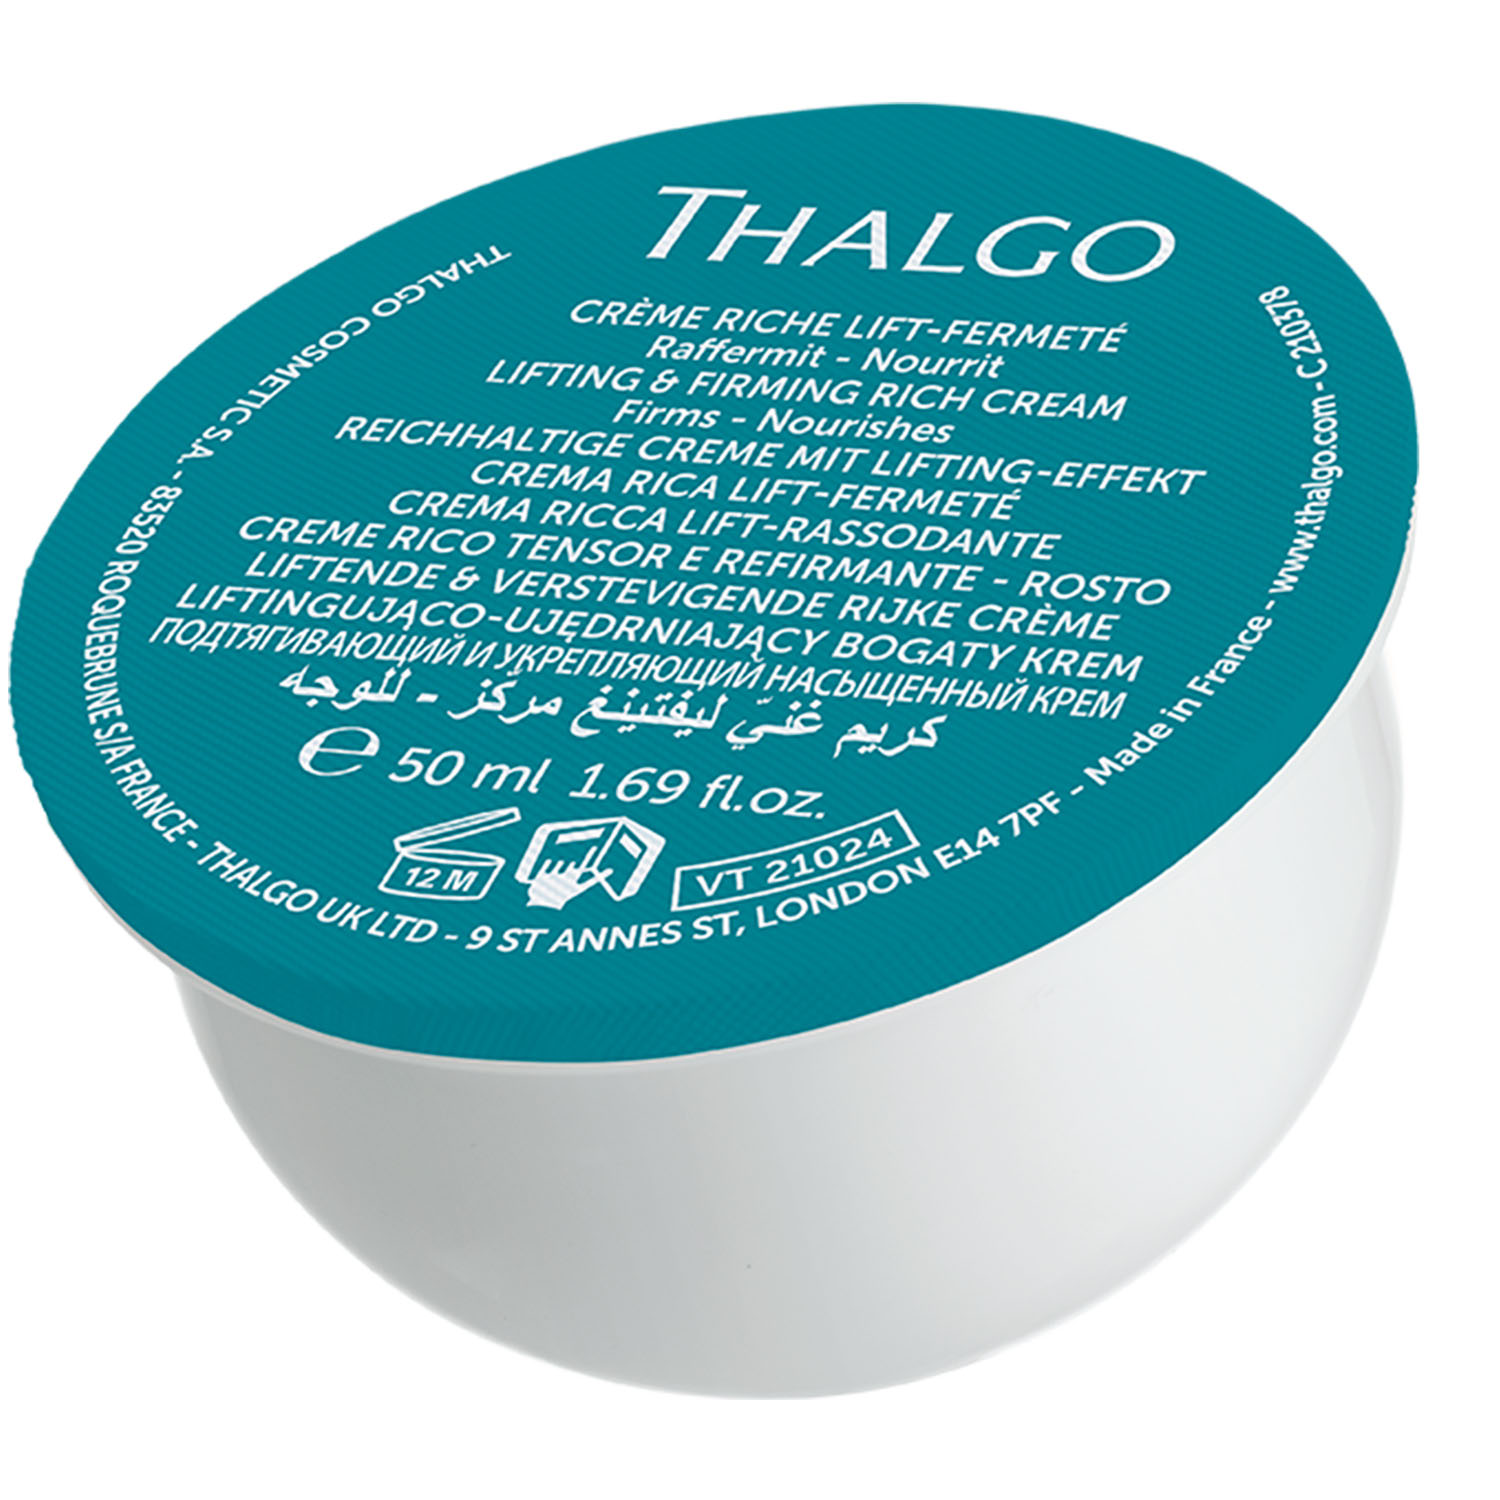 Thalgo Подтягивающий и укрепляющий насыщенный крем, сменный блок 50 мл (Thalgo, Silicium Lift) подтягивающий и укрепляющий крем thalgo 50 мл